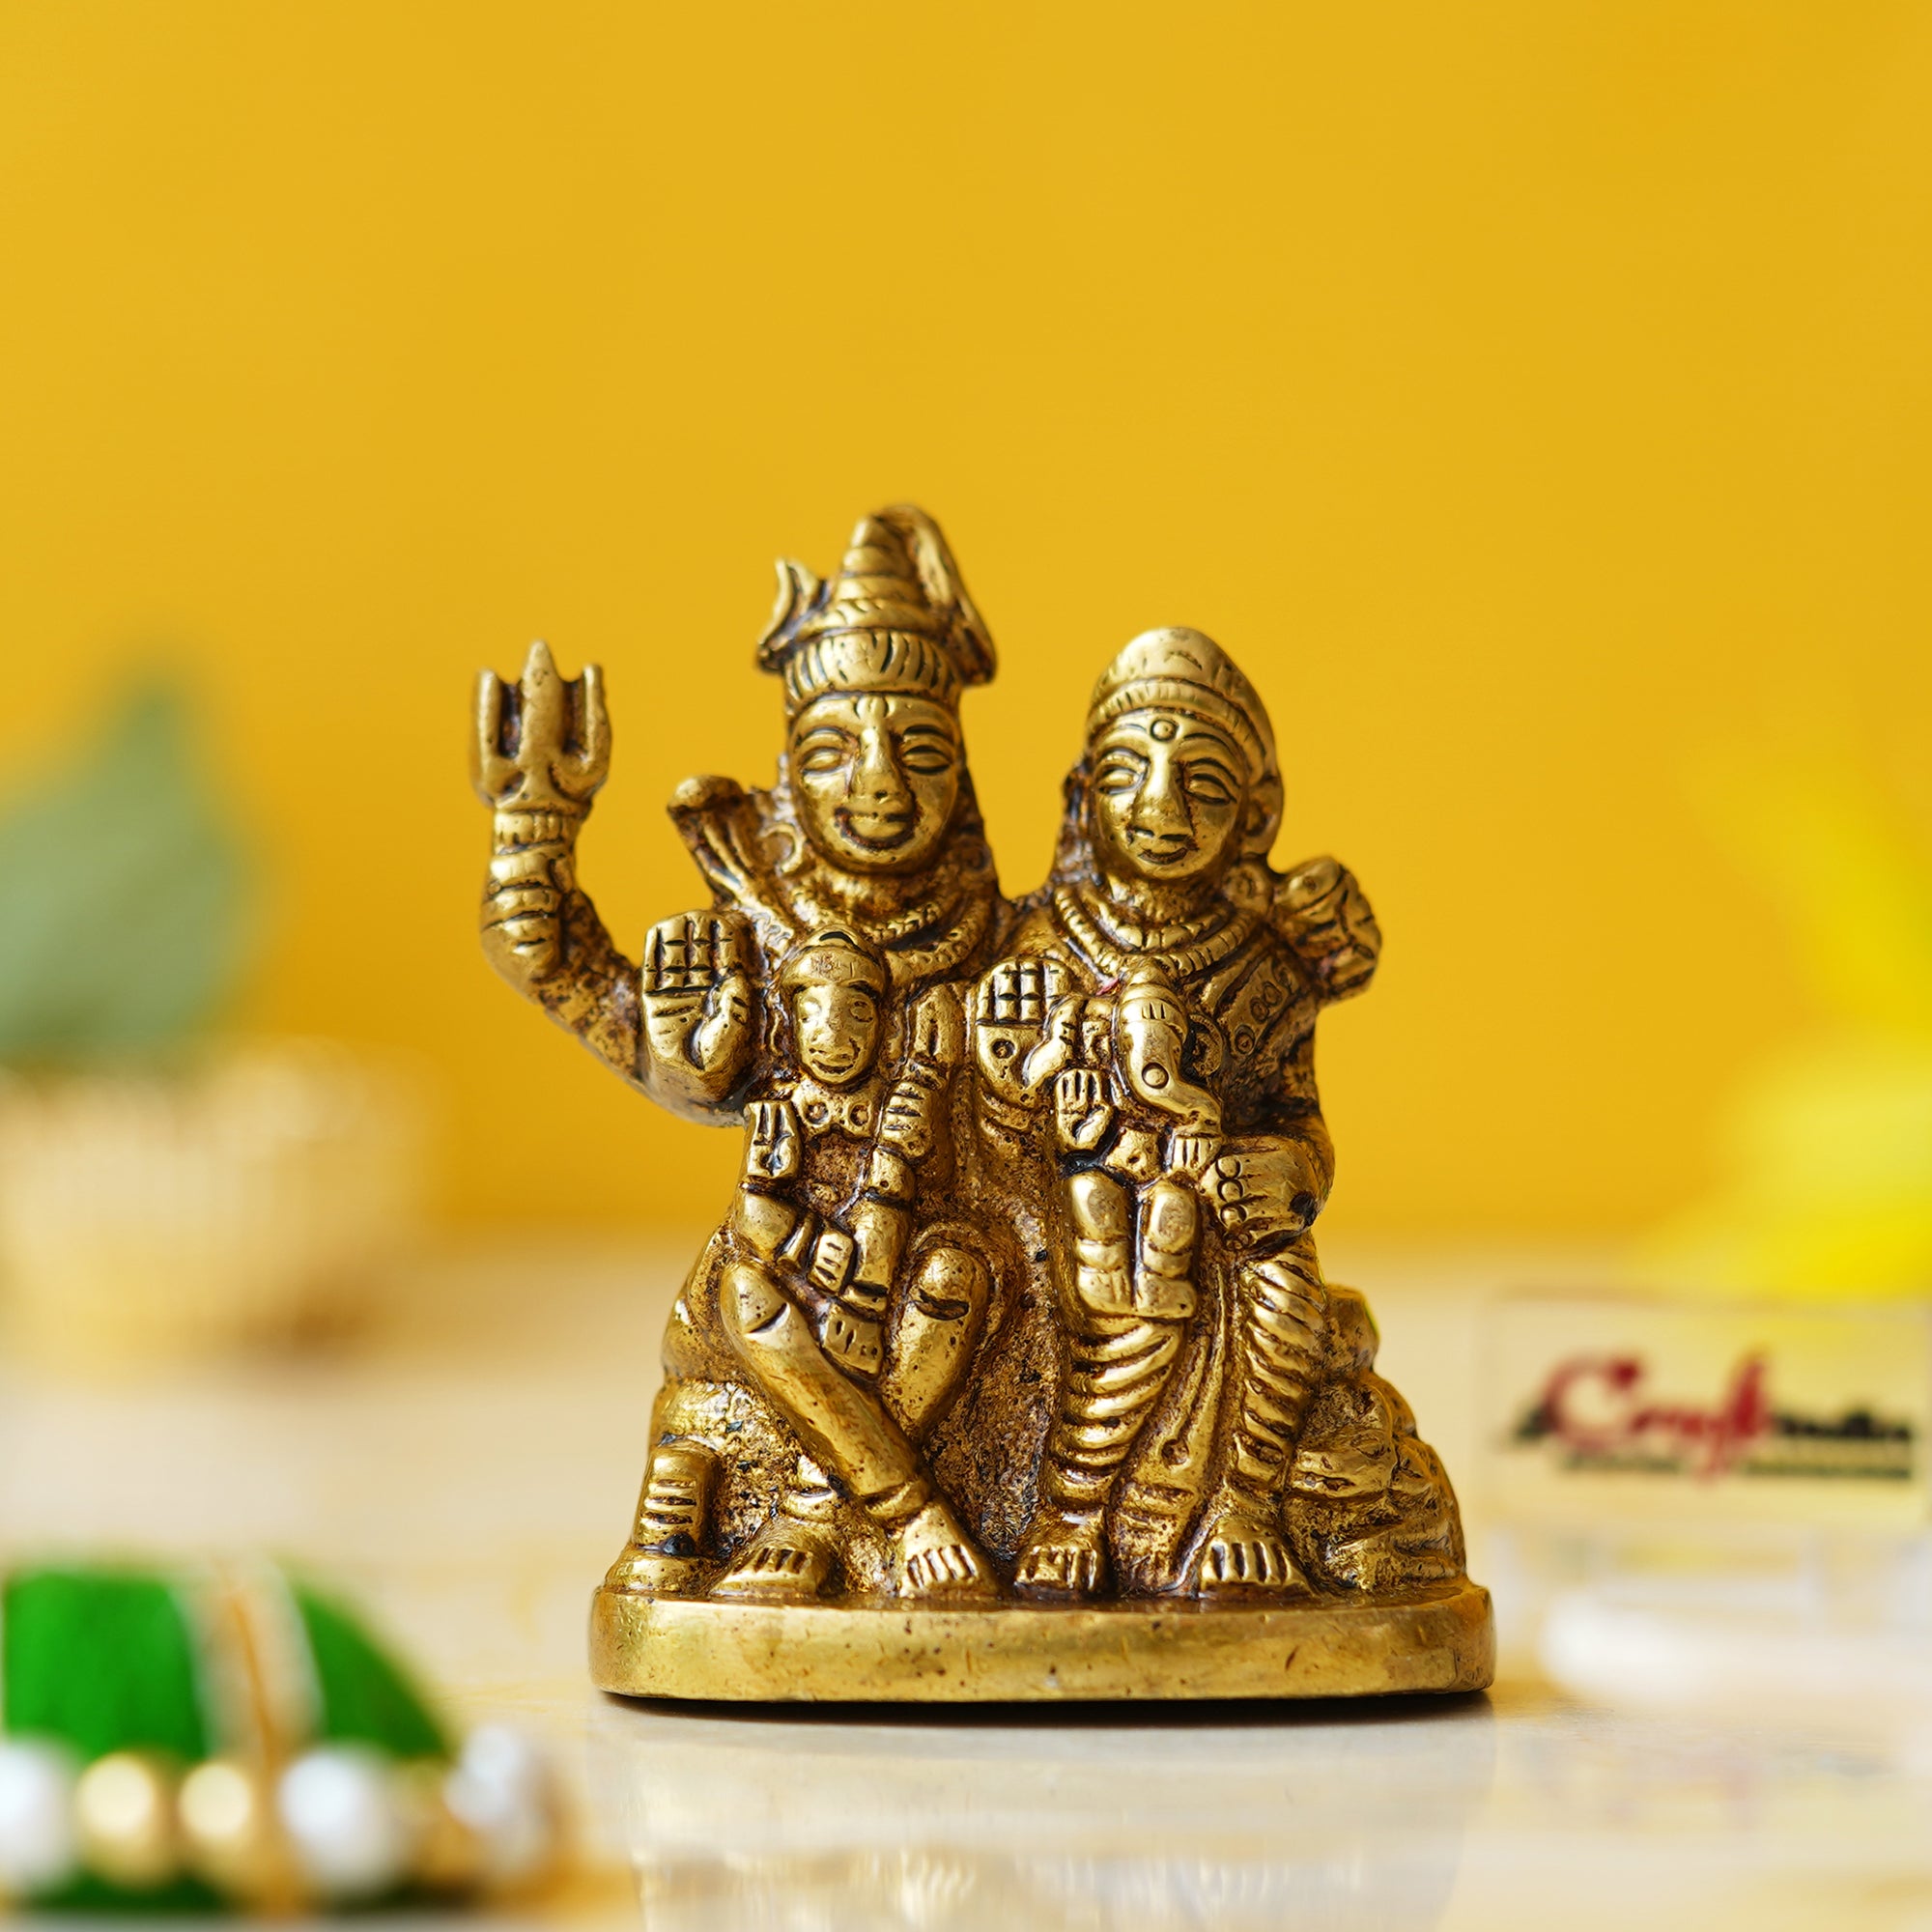 Golden Brass Shiv Parivar Murti Idol - Lord Shiva, Parvati, Ganesha, Kartikeya Statue for Home Temple, Car Dashboard